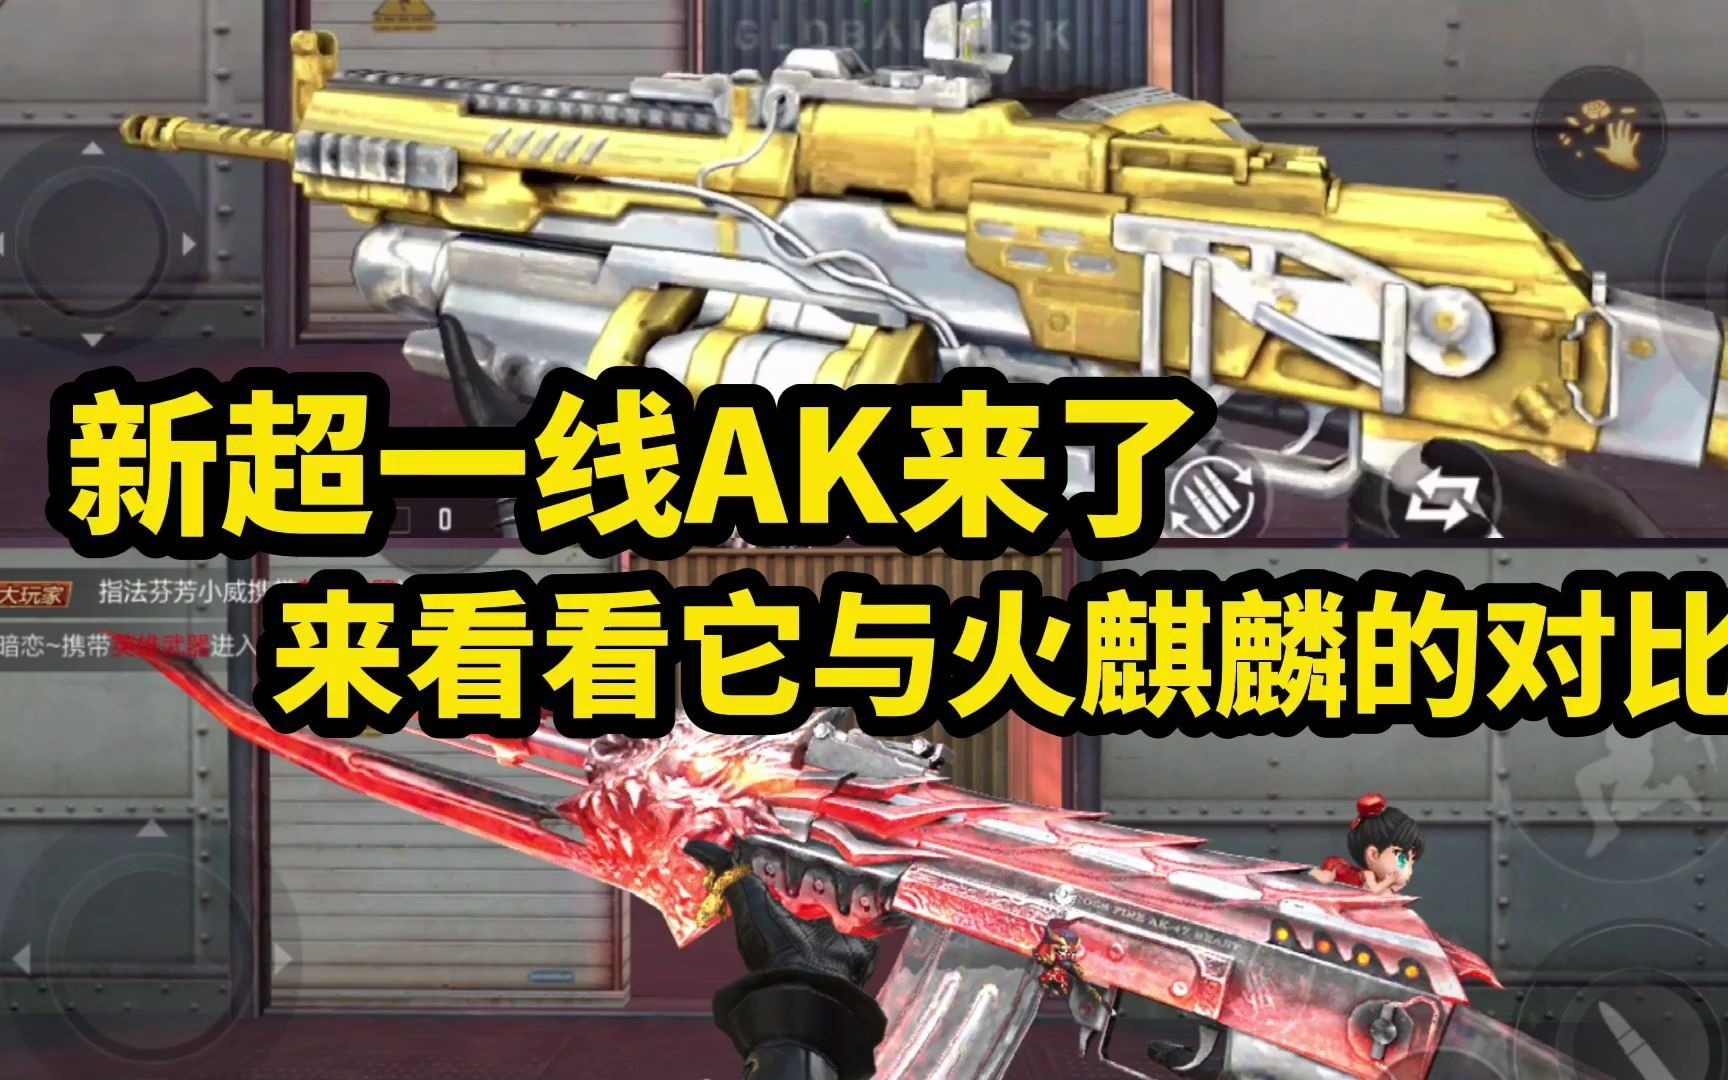 CF所有AK47-火麒麟武器及皮肤大盘点，谁最帅，这一次你说了算 - 哔哩哔哩